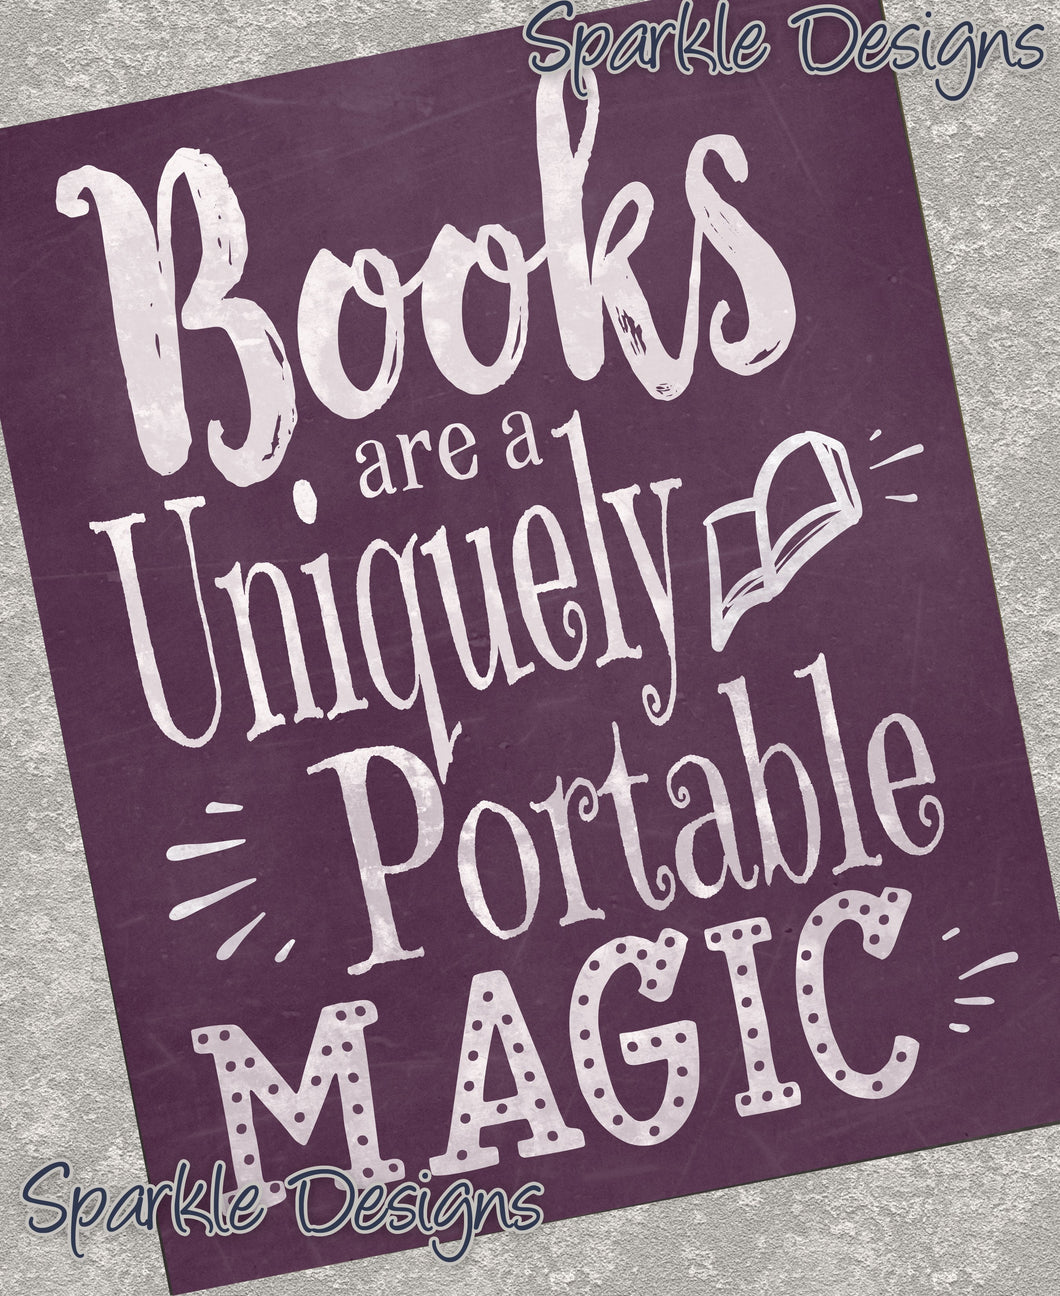 Books are a uniquely portable magic - Books 169 wood Print